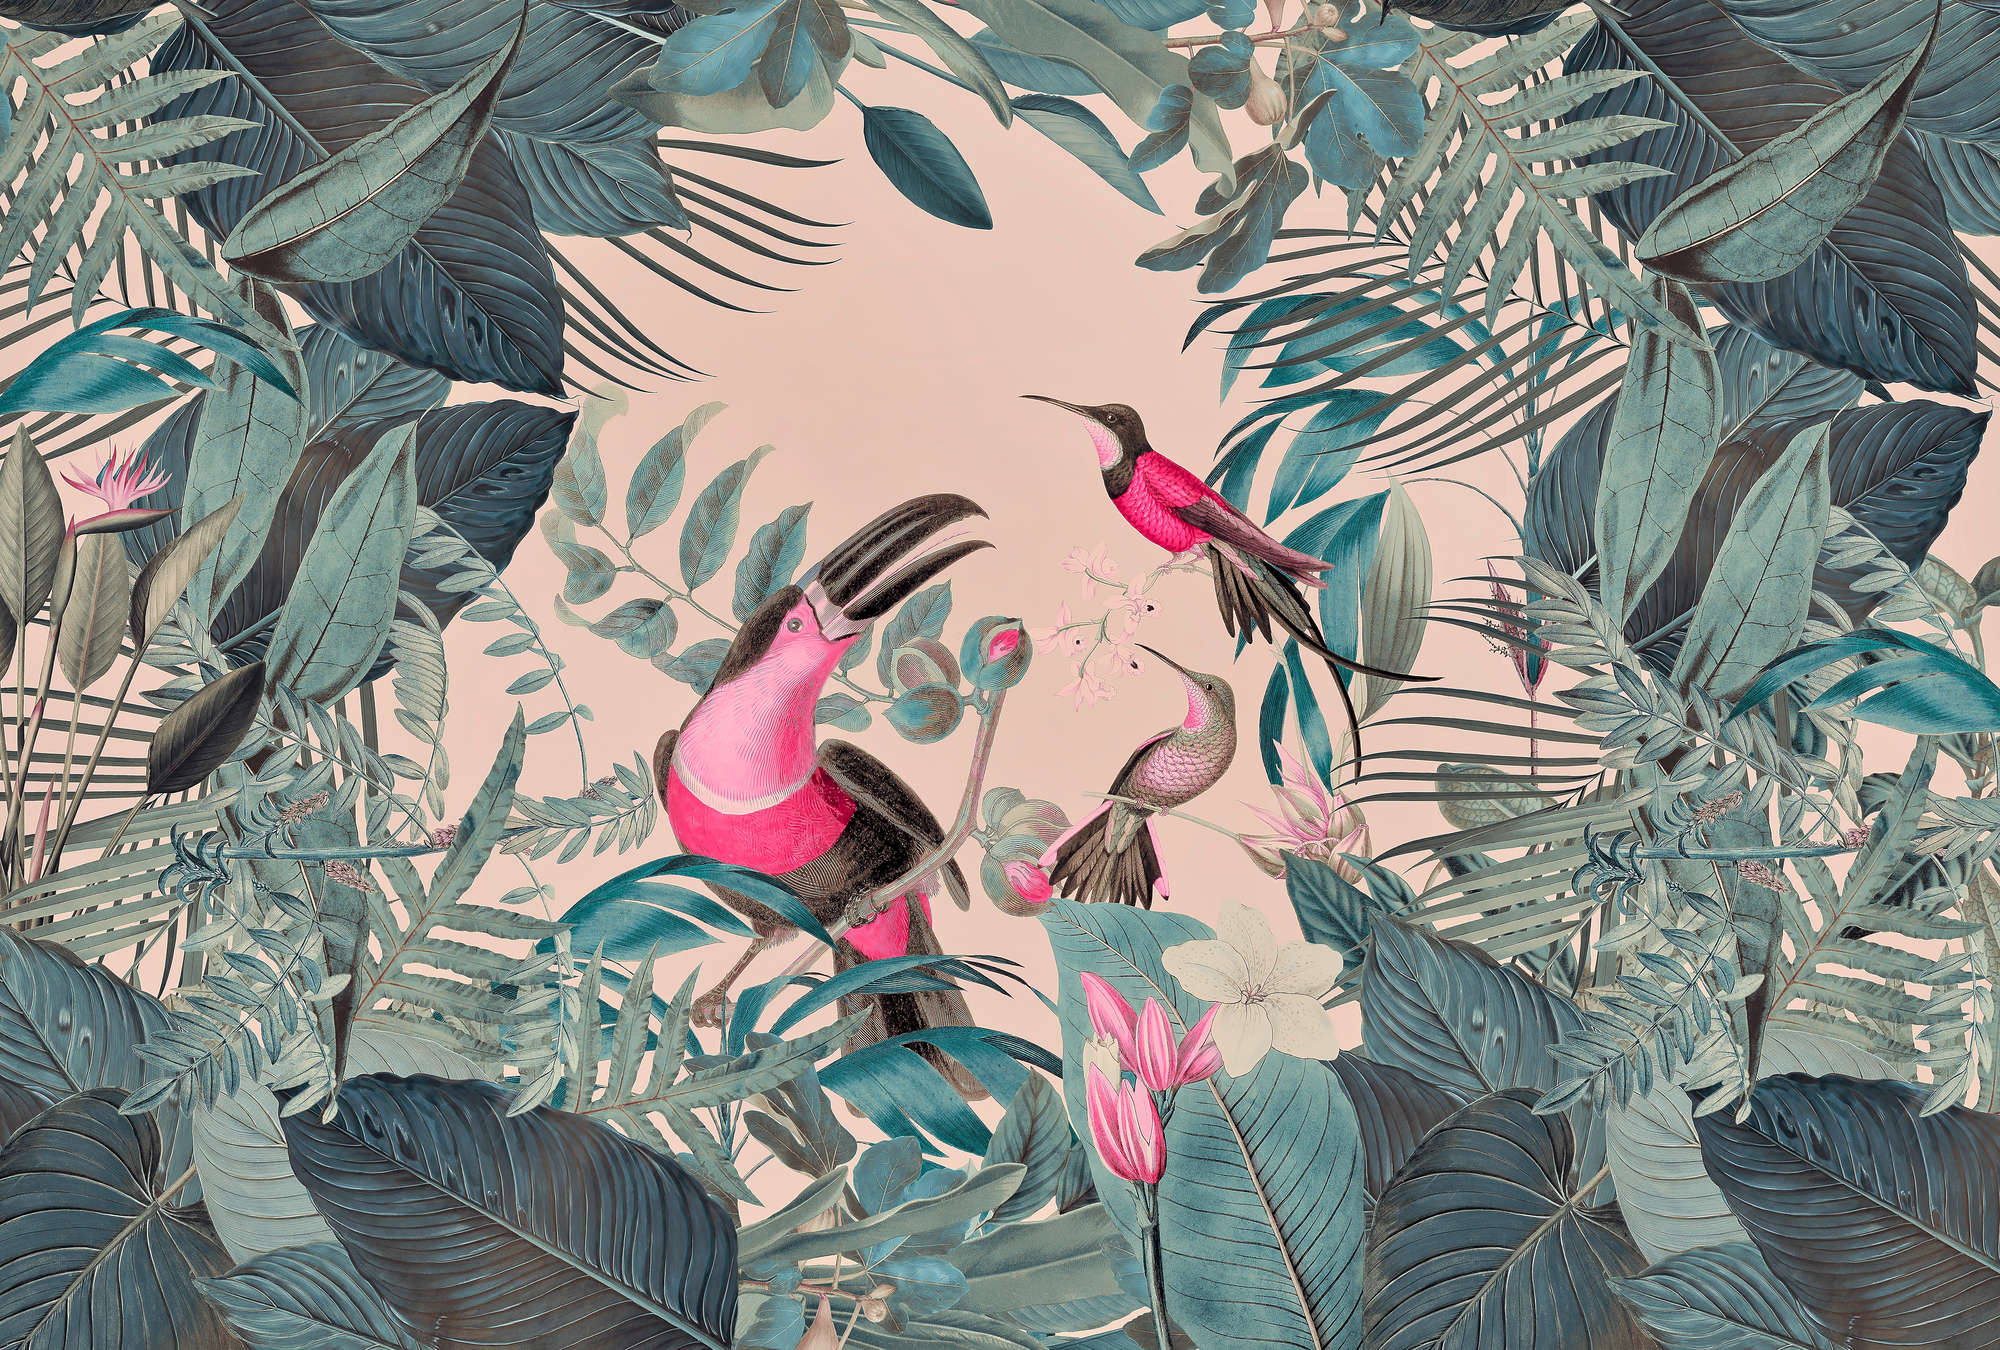             Papel Pintado Selva Tropical con Pájaros - Verde, Rosa
        